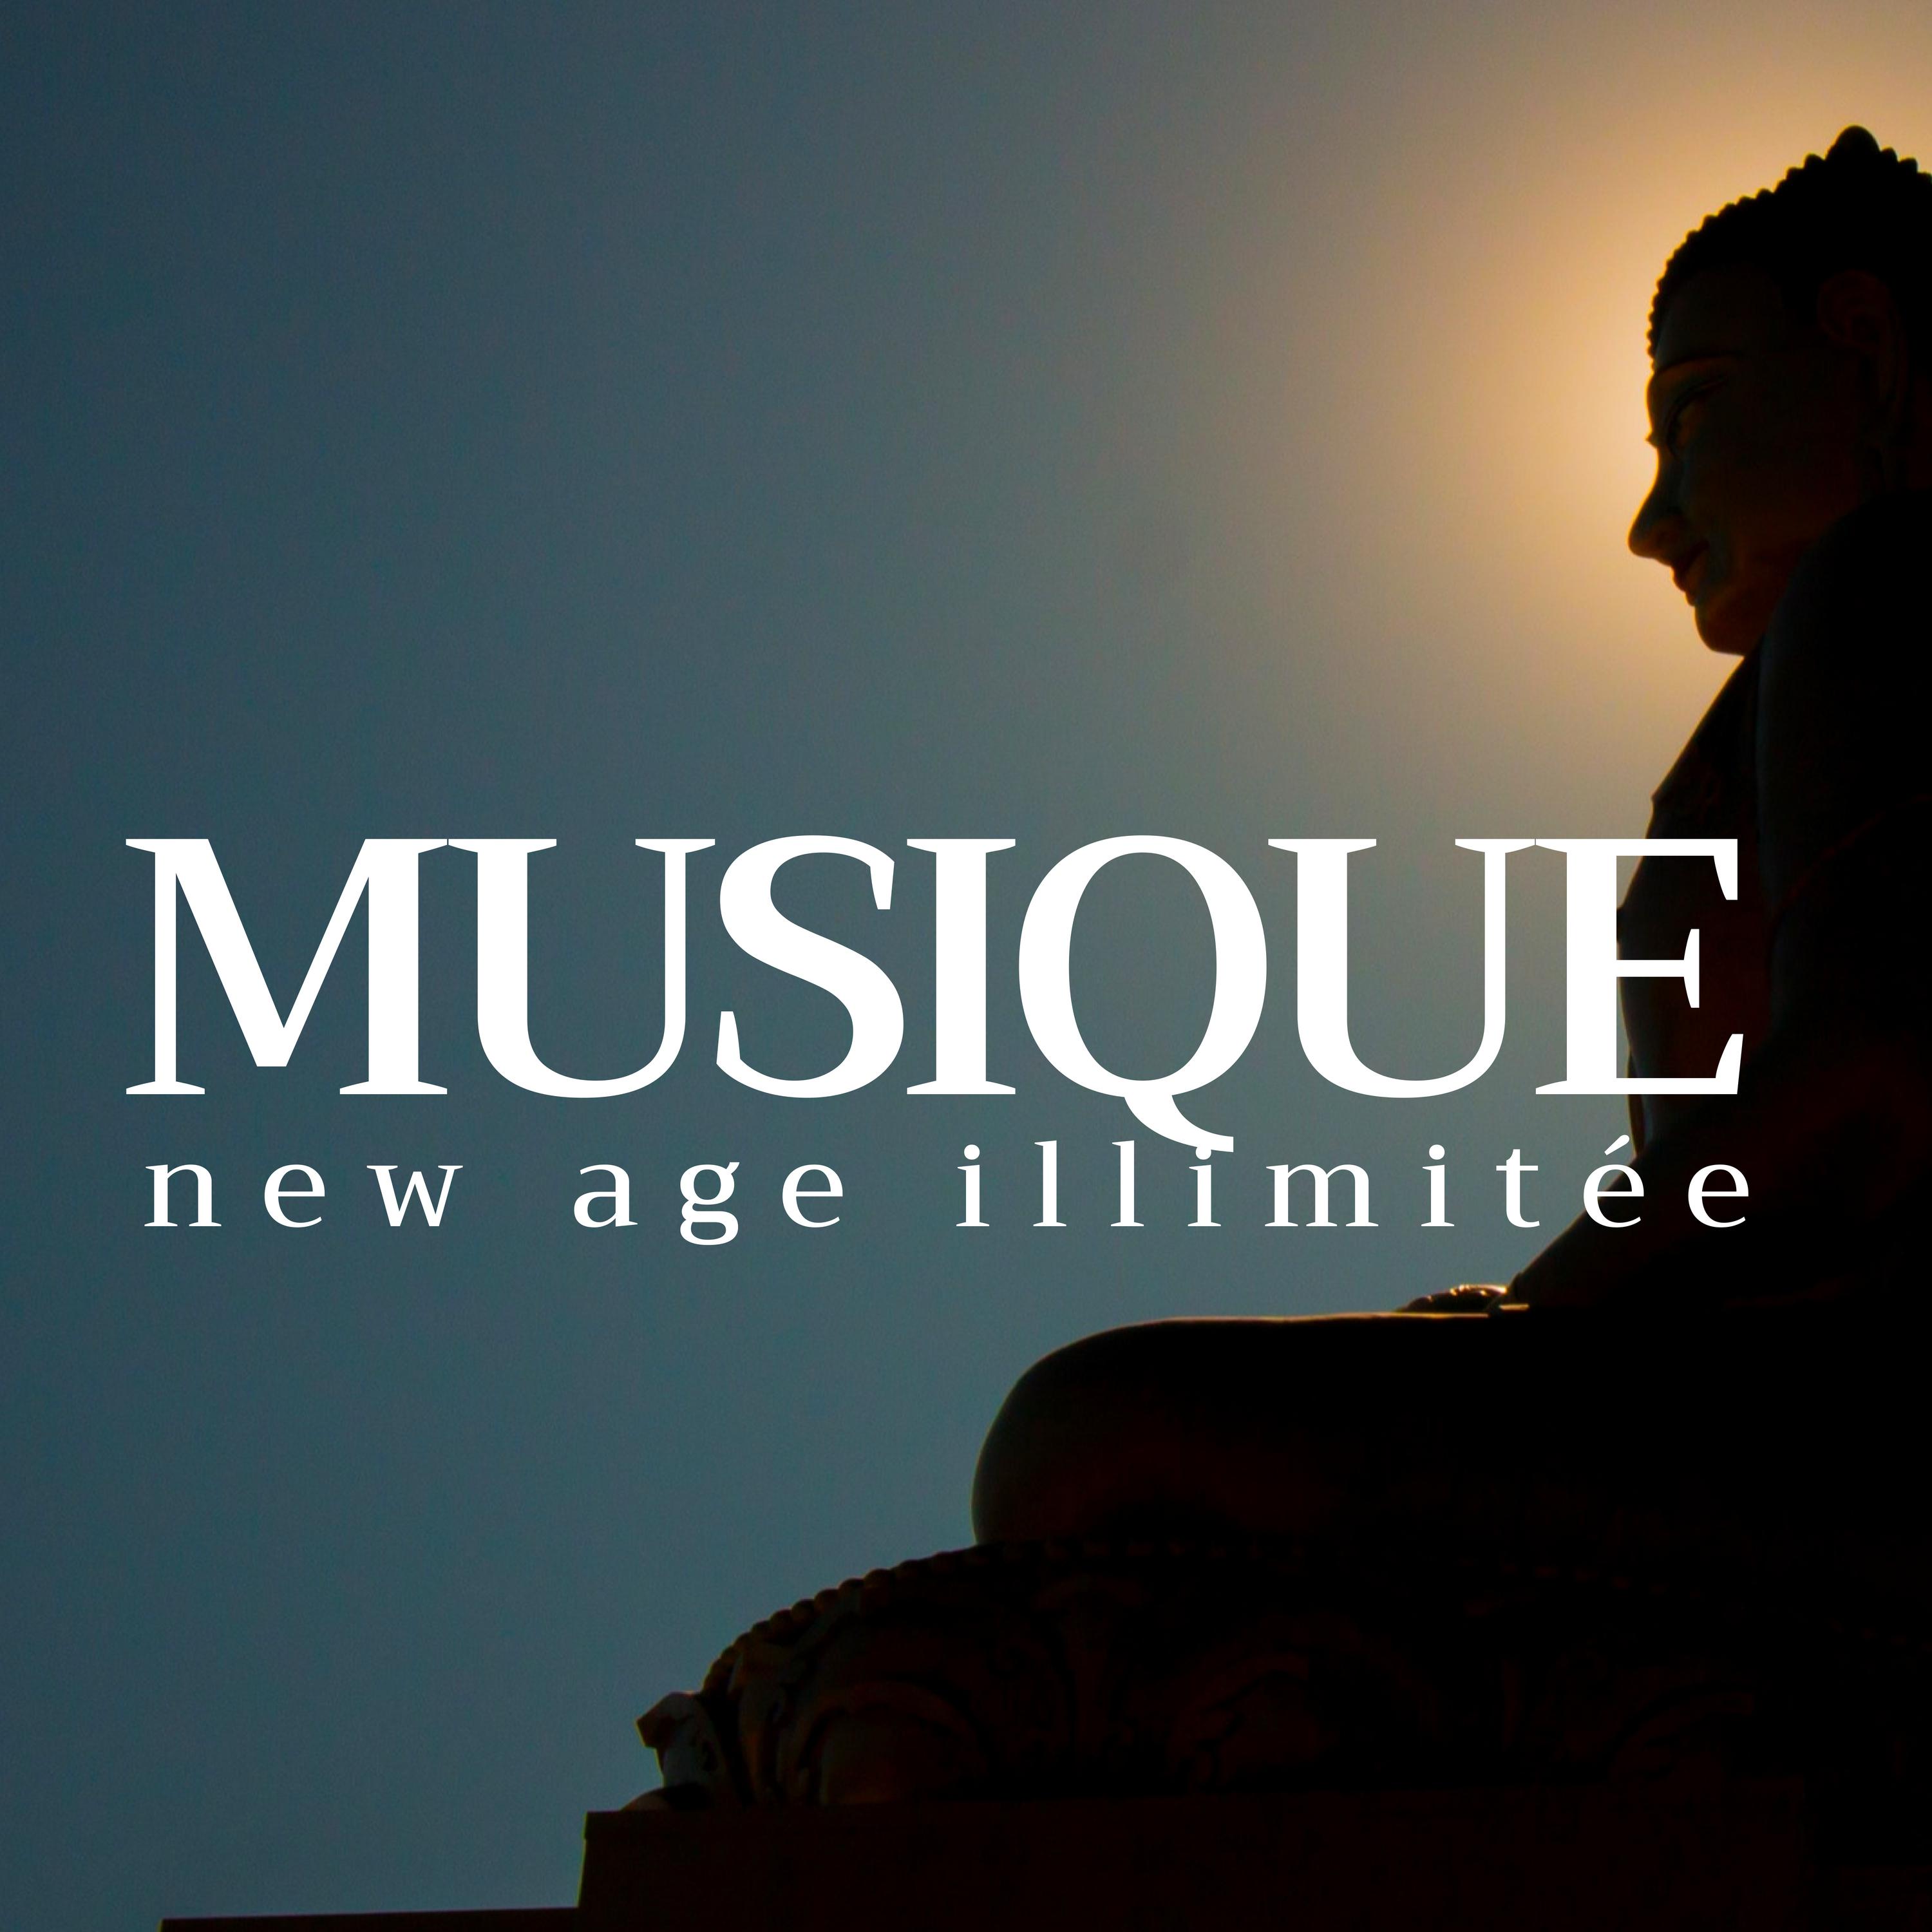 Musique new age illimitée avec des sons de la nature et de la musique instrumentale bouddhiste